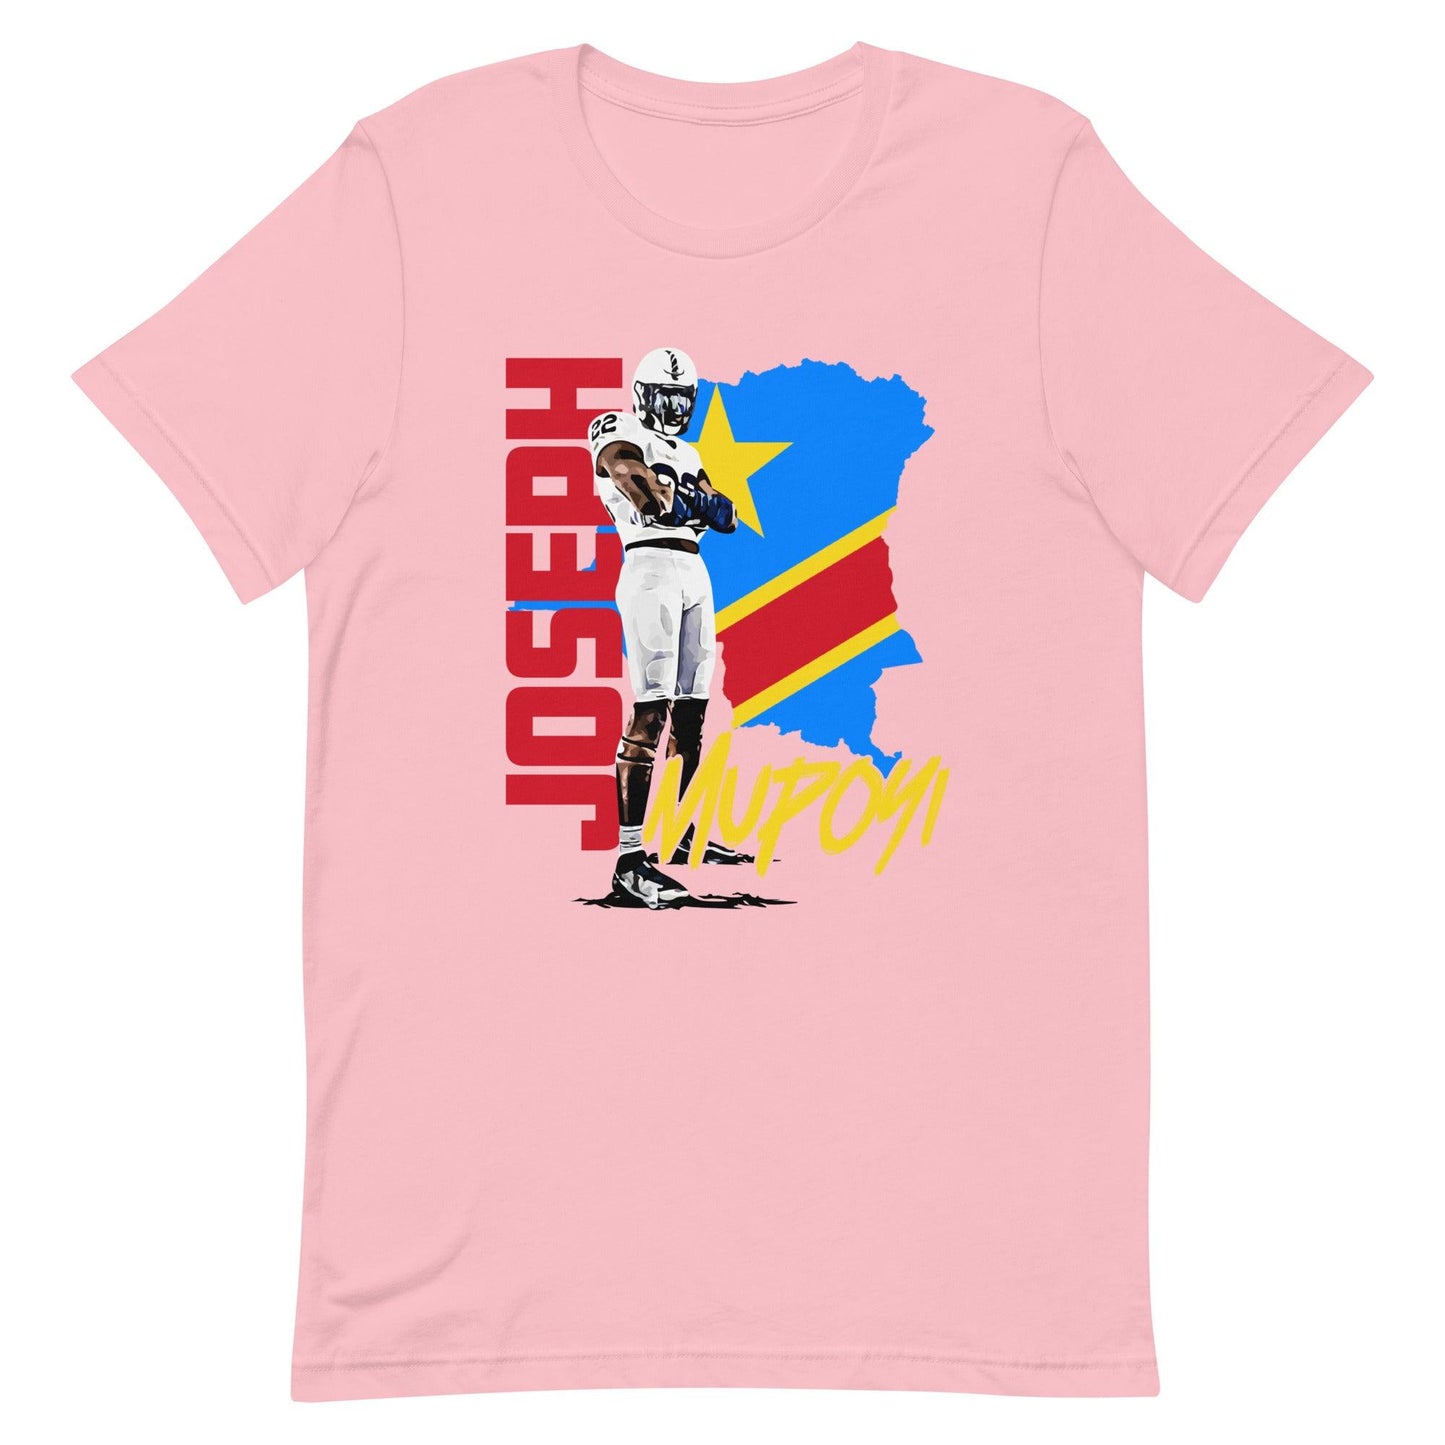 Joseph Mupoyi "Gameday" t-shirt - Fan Arch